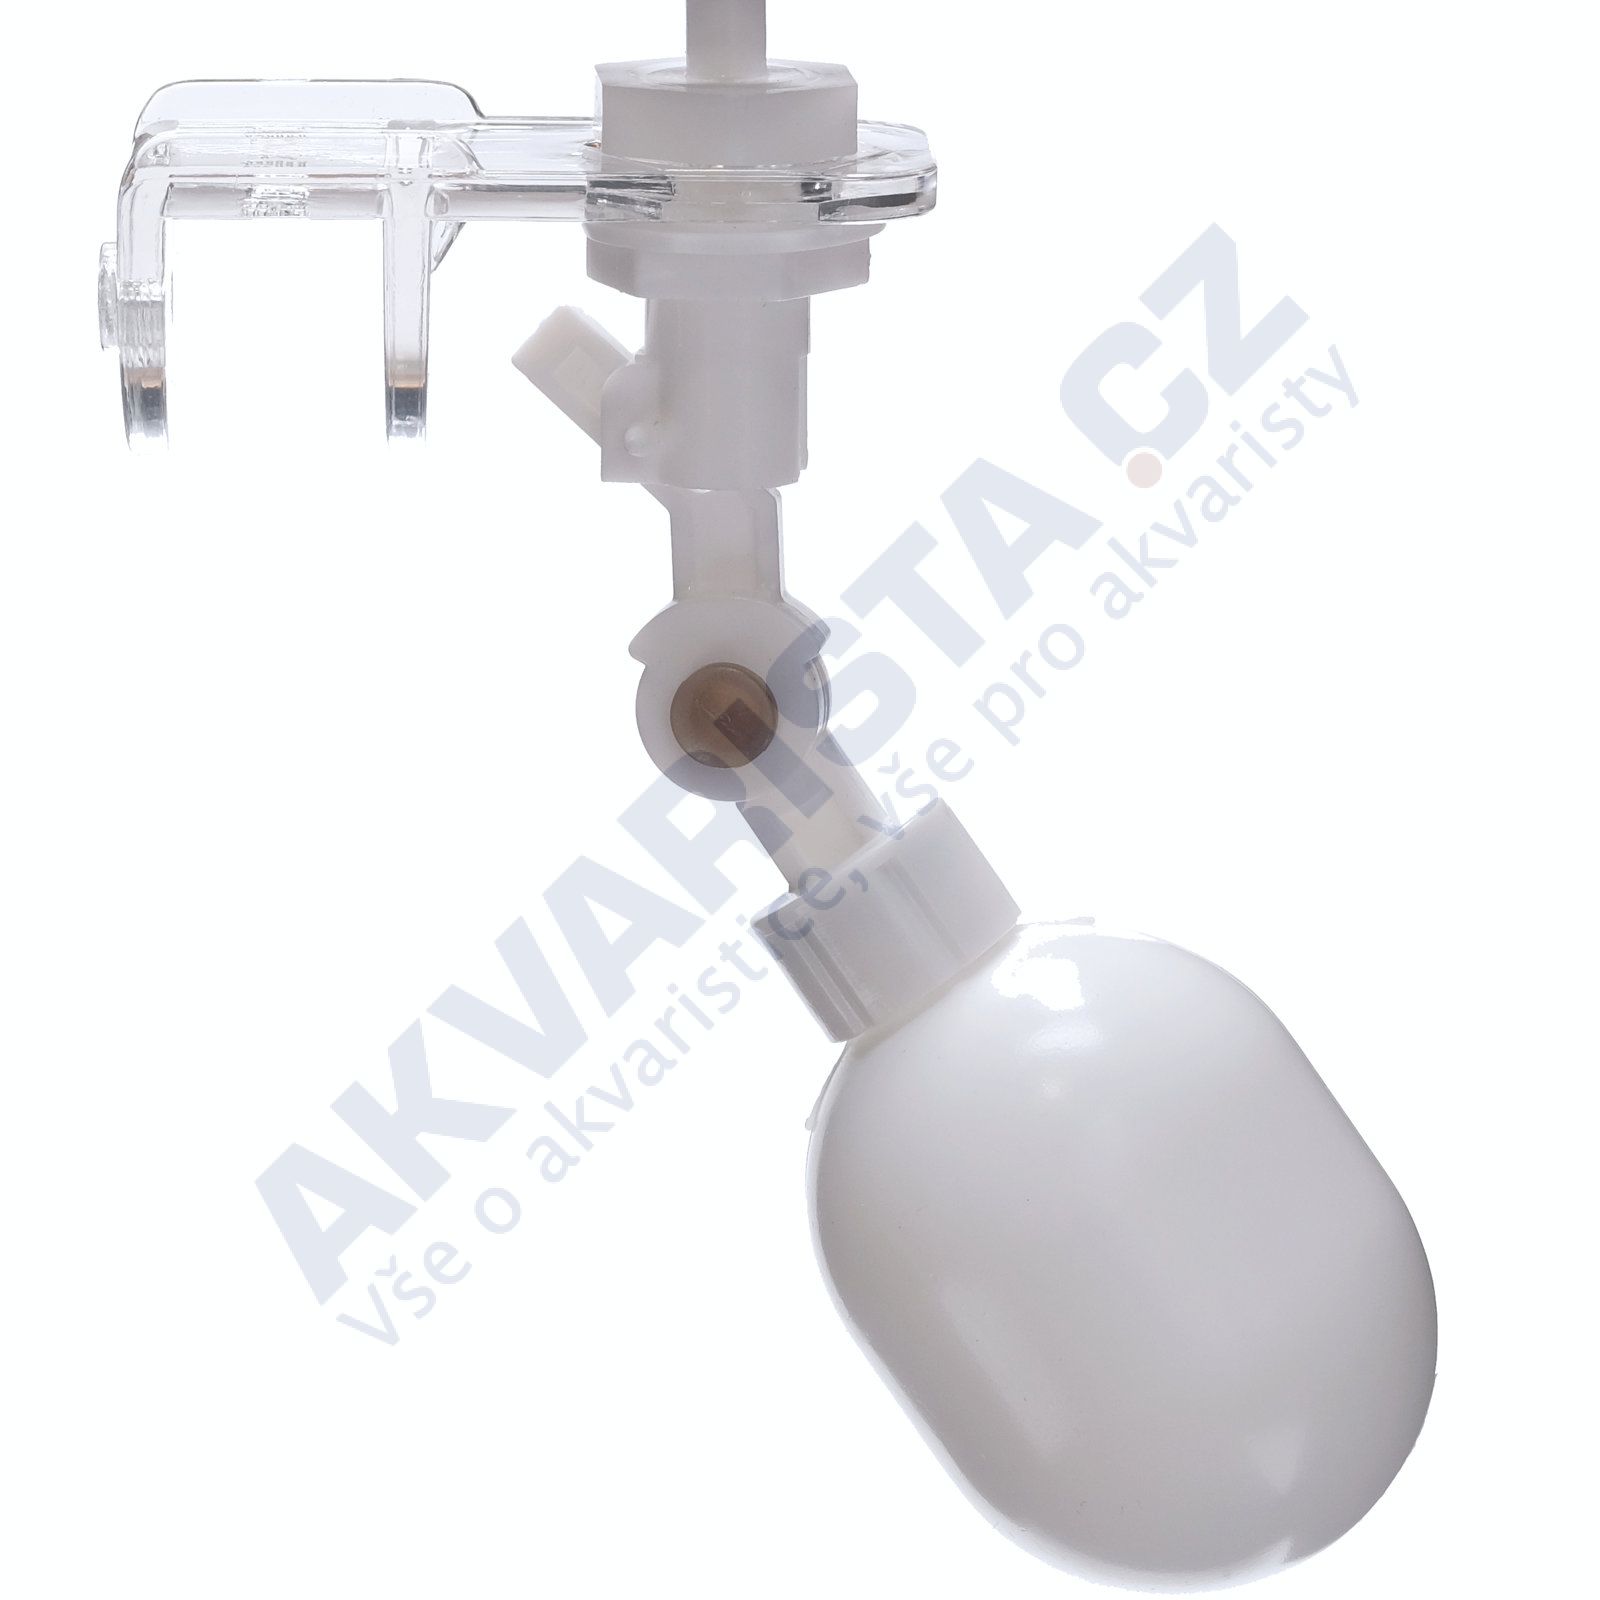 Automatický stop ventil s plovákovým balonkem pro napouštění nádrží s připojením 1/4